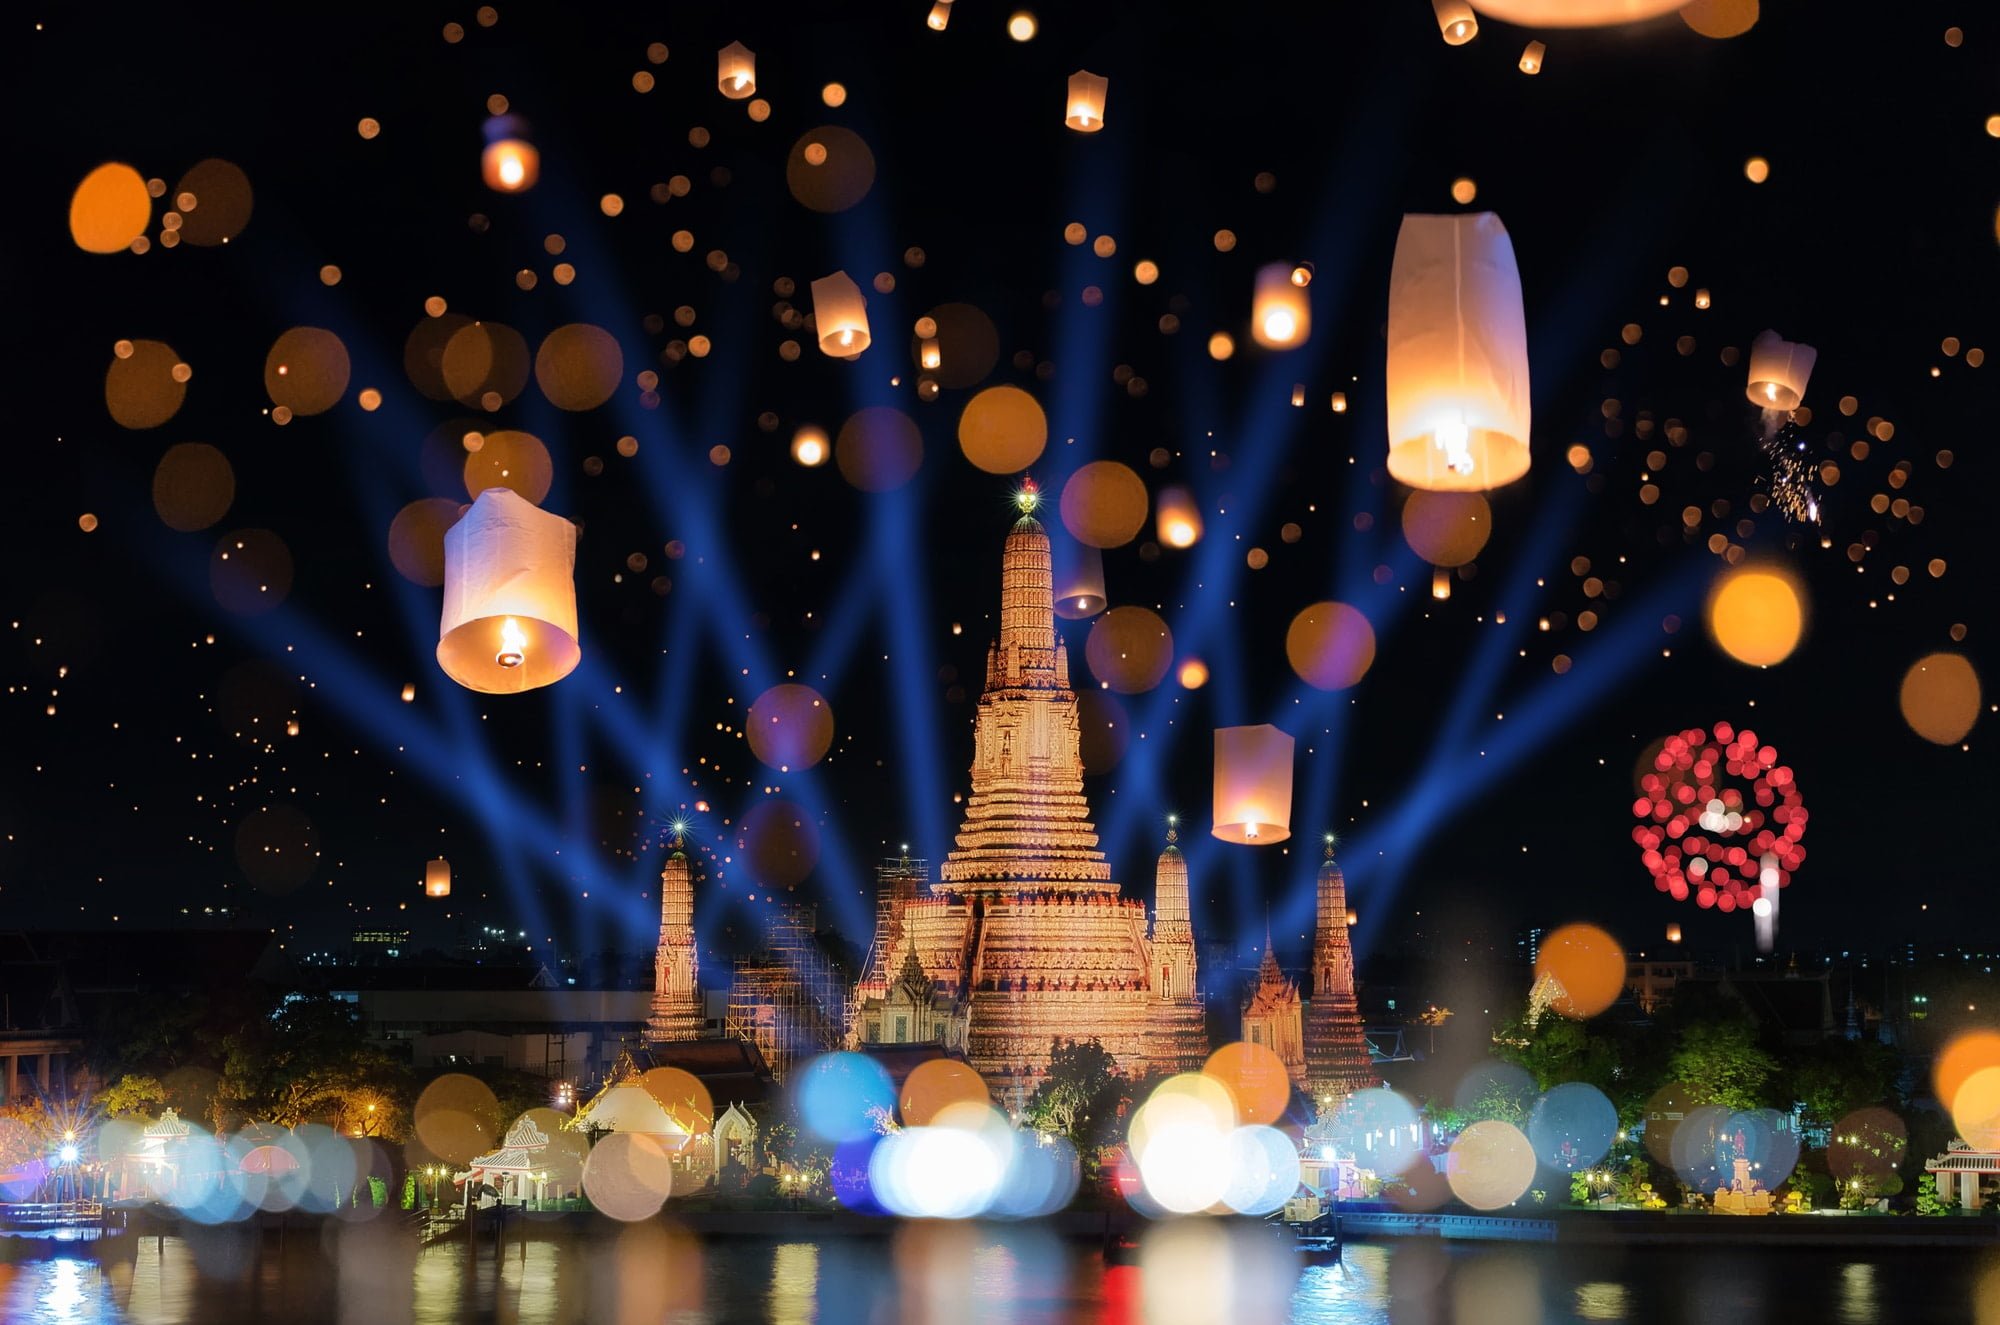 Bangkok happy new year countdown fireworks and lantern at Wat Arun Temple, Bangkok Thailand.